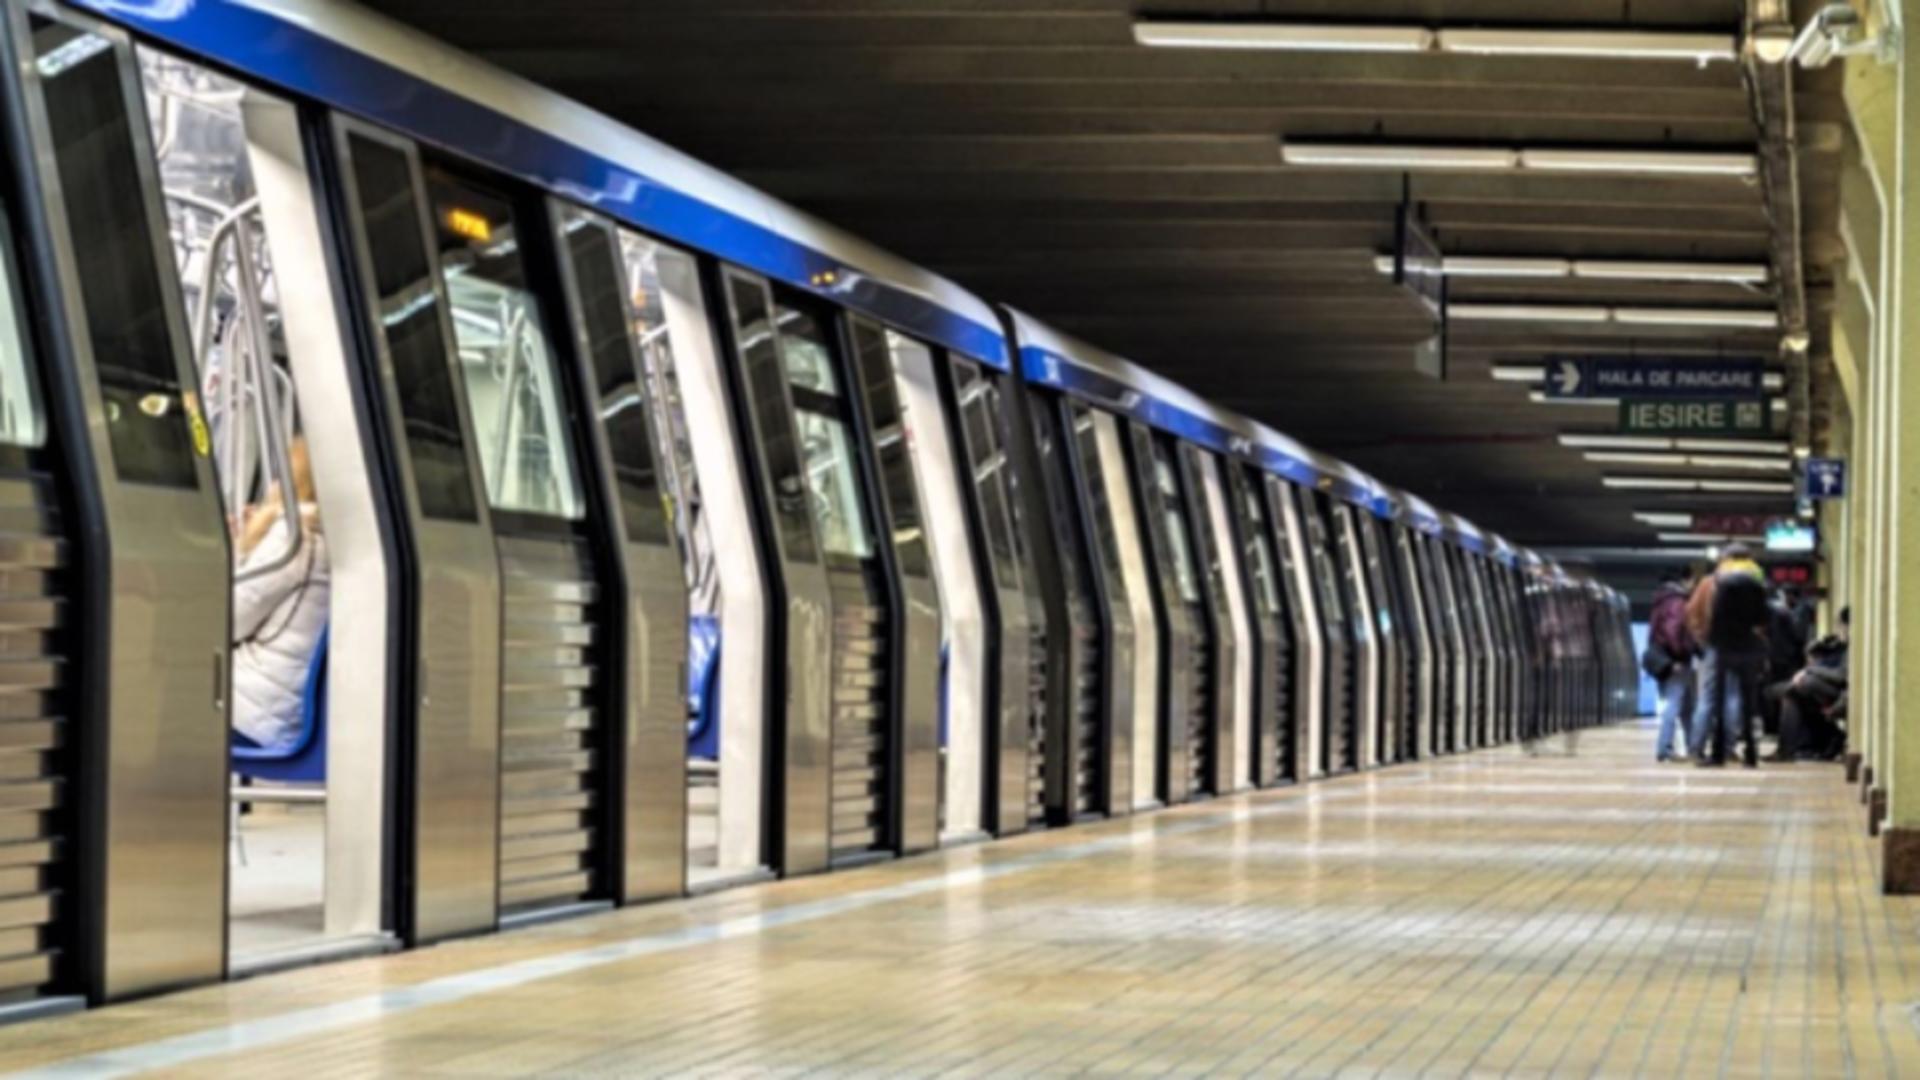 Primul tren de metrou fabricat în Brazilia a ajuns în Depoul din Berceni. Când va intra în circulație: anunțul Metrorex